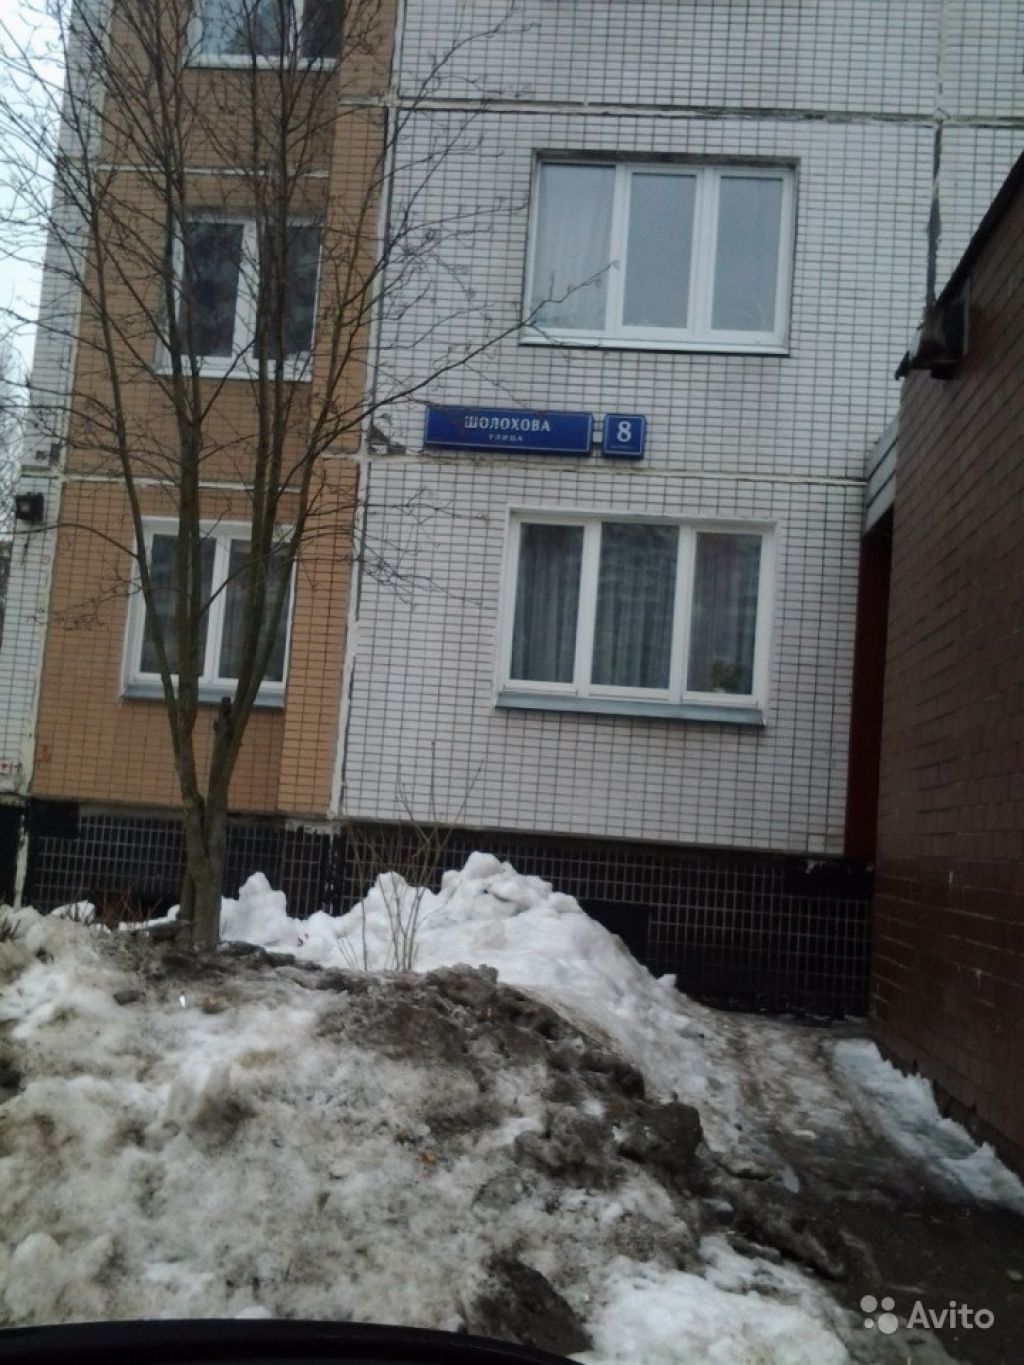 Продам квартиру 1-к квартира 39 м² на 14 этаже 14-этажного панельного дома в Москве. Фото 1